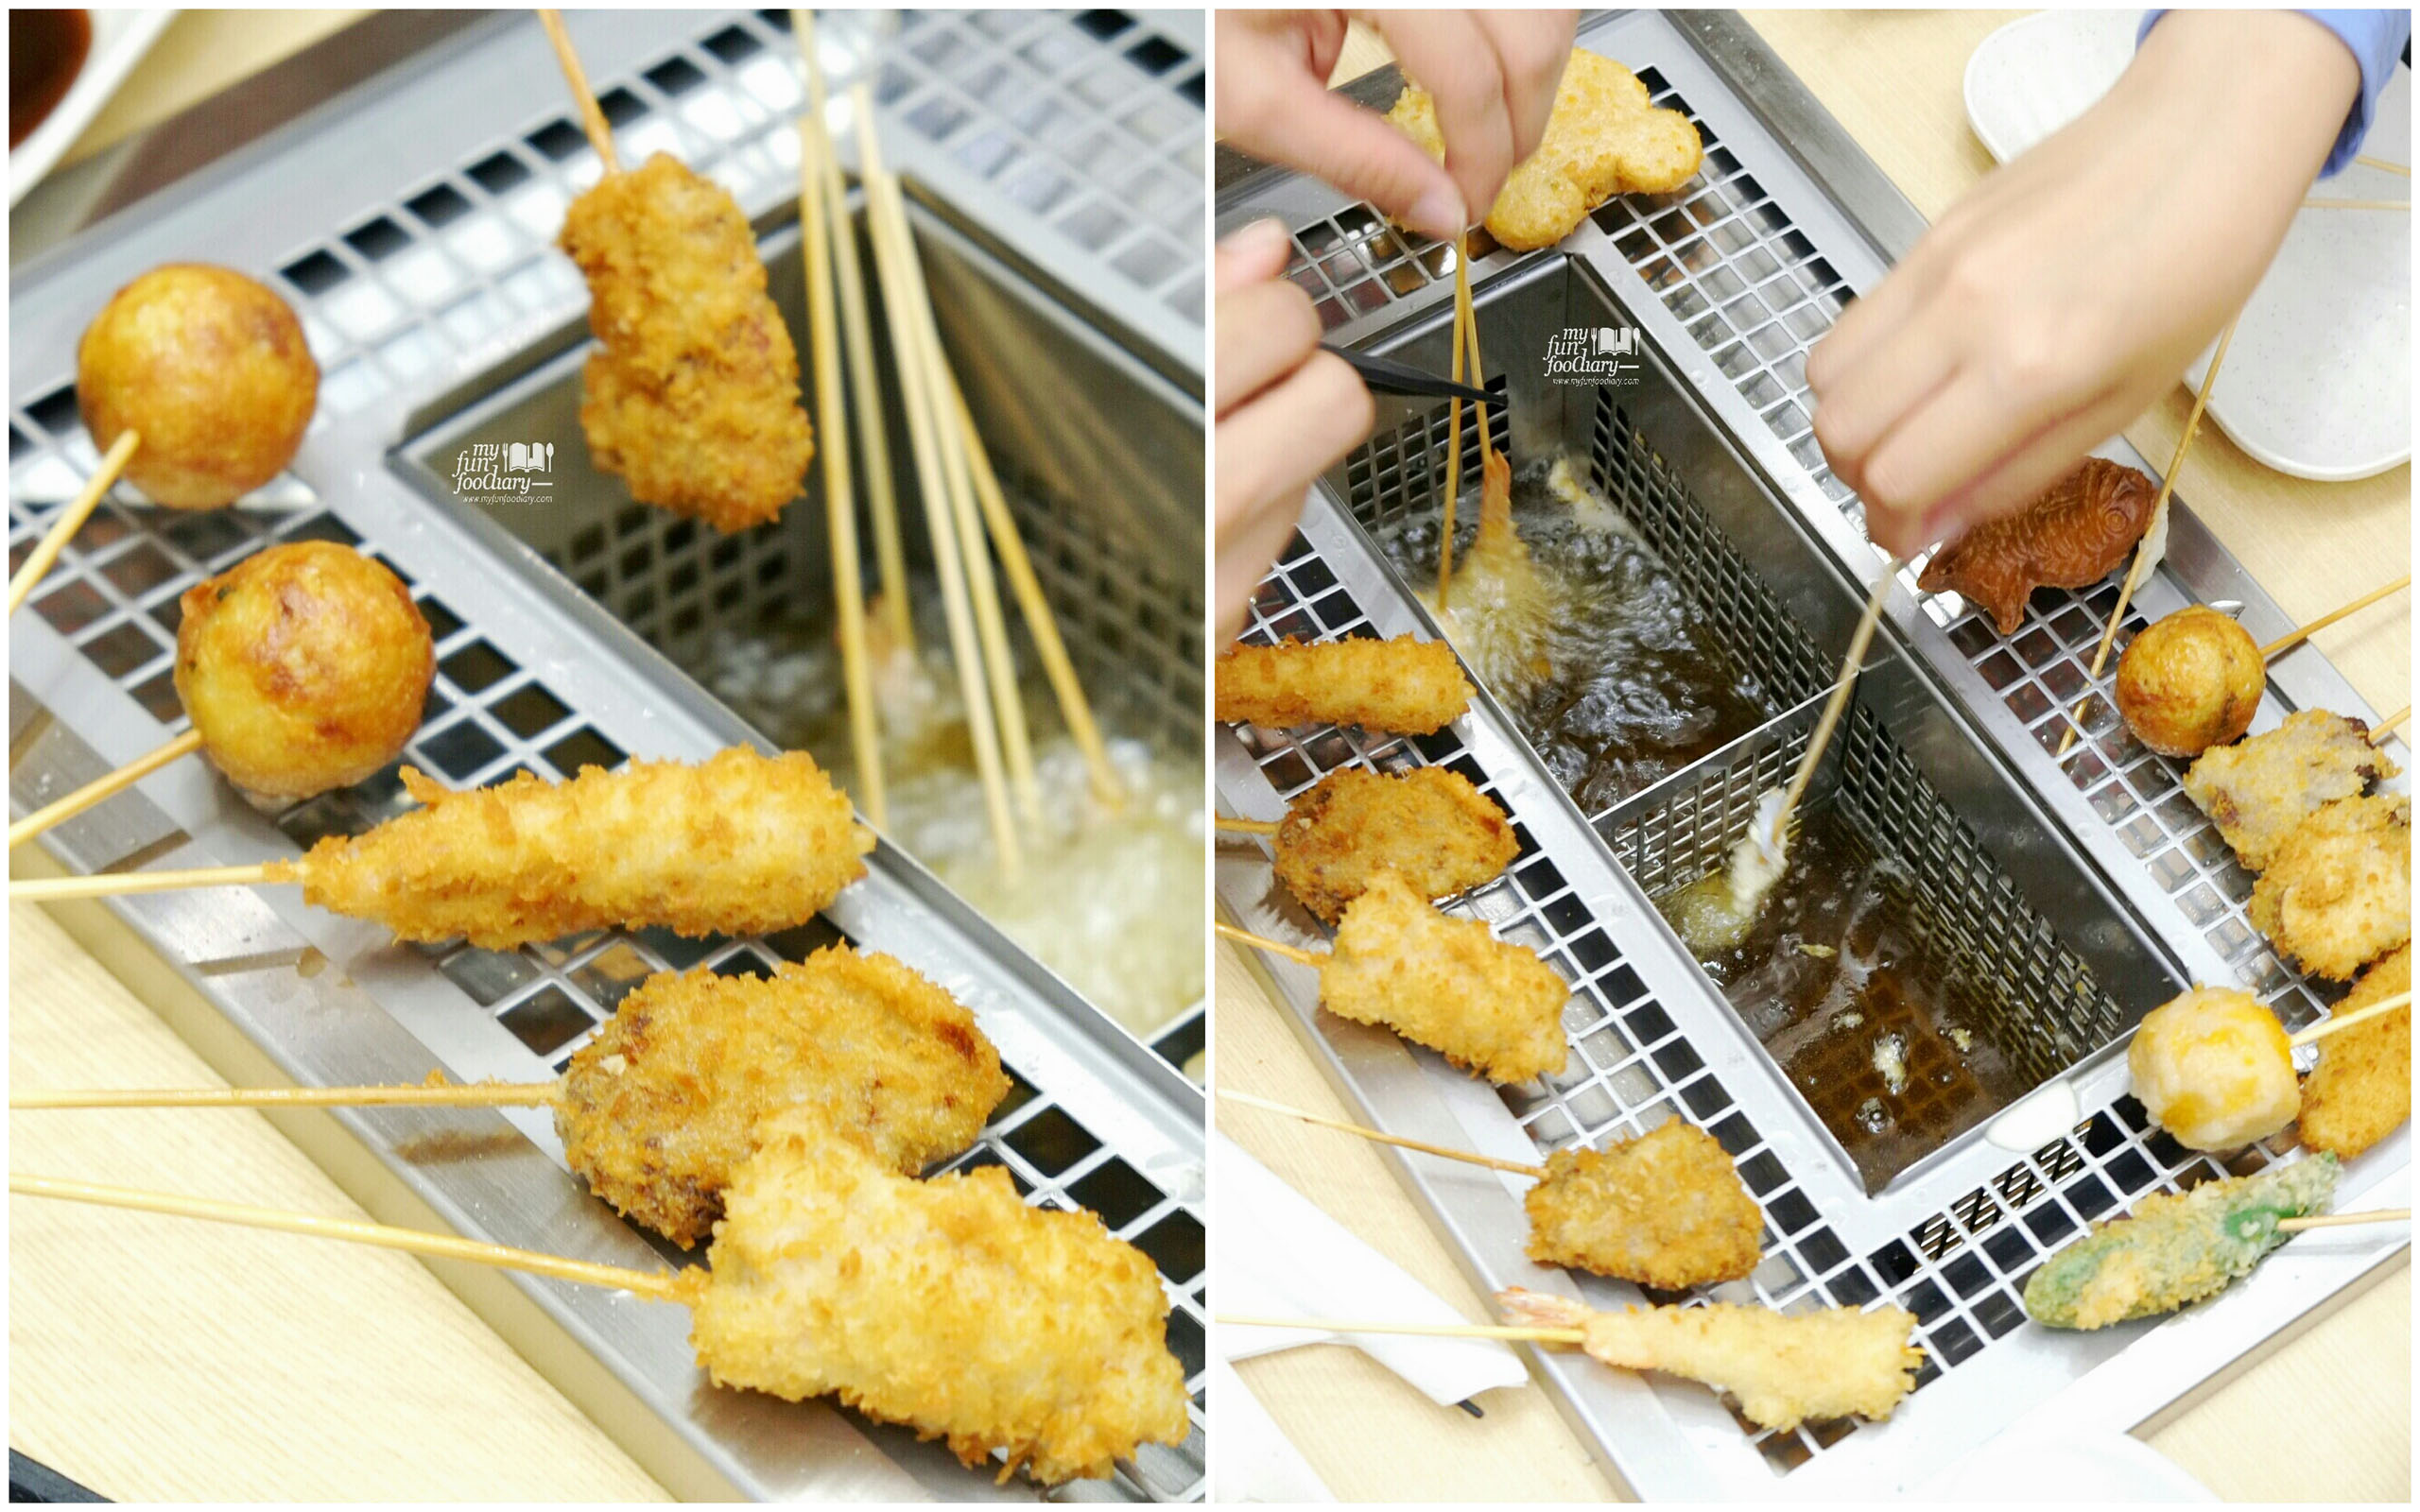 Fun Cooking Process at Kushiya Monogatari by Myfunfoodiary